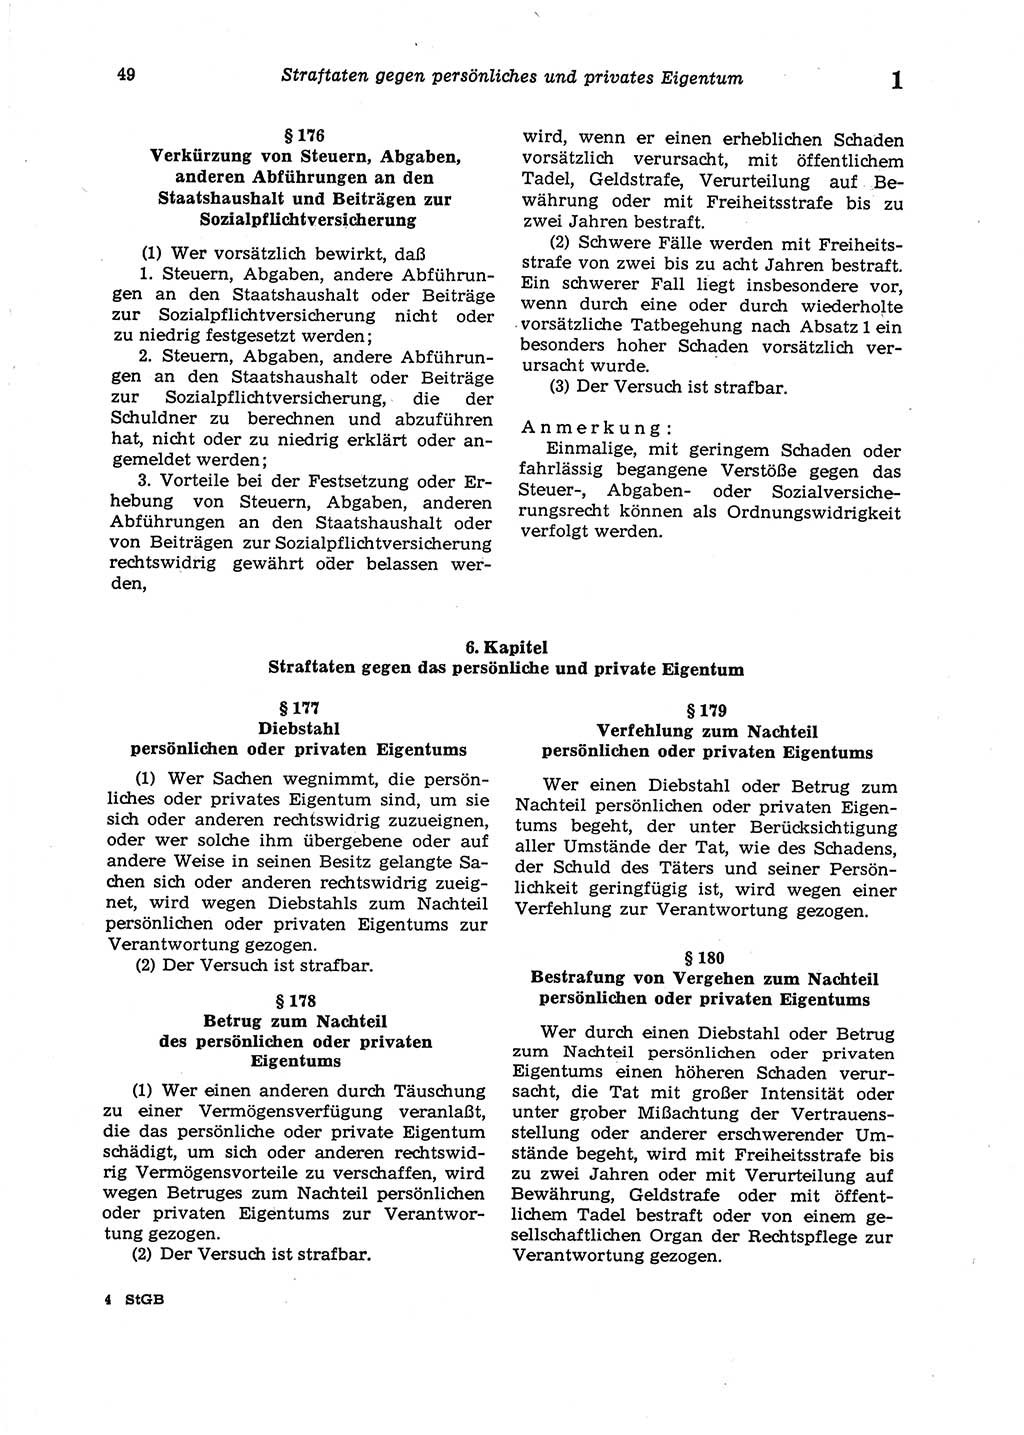 Strafgesetzbuch (StGB) der Deutschen Demokratischen Republik (DDR) 1987, Seite 49 (StGB DDR 1987, S. 49)